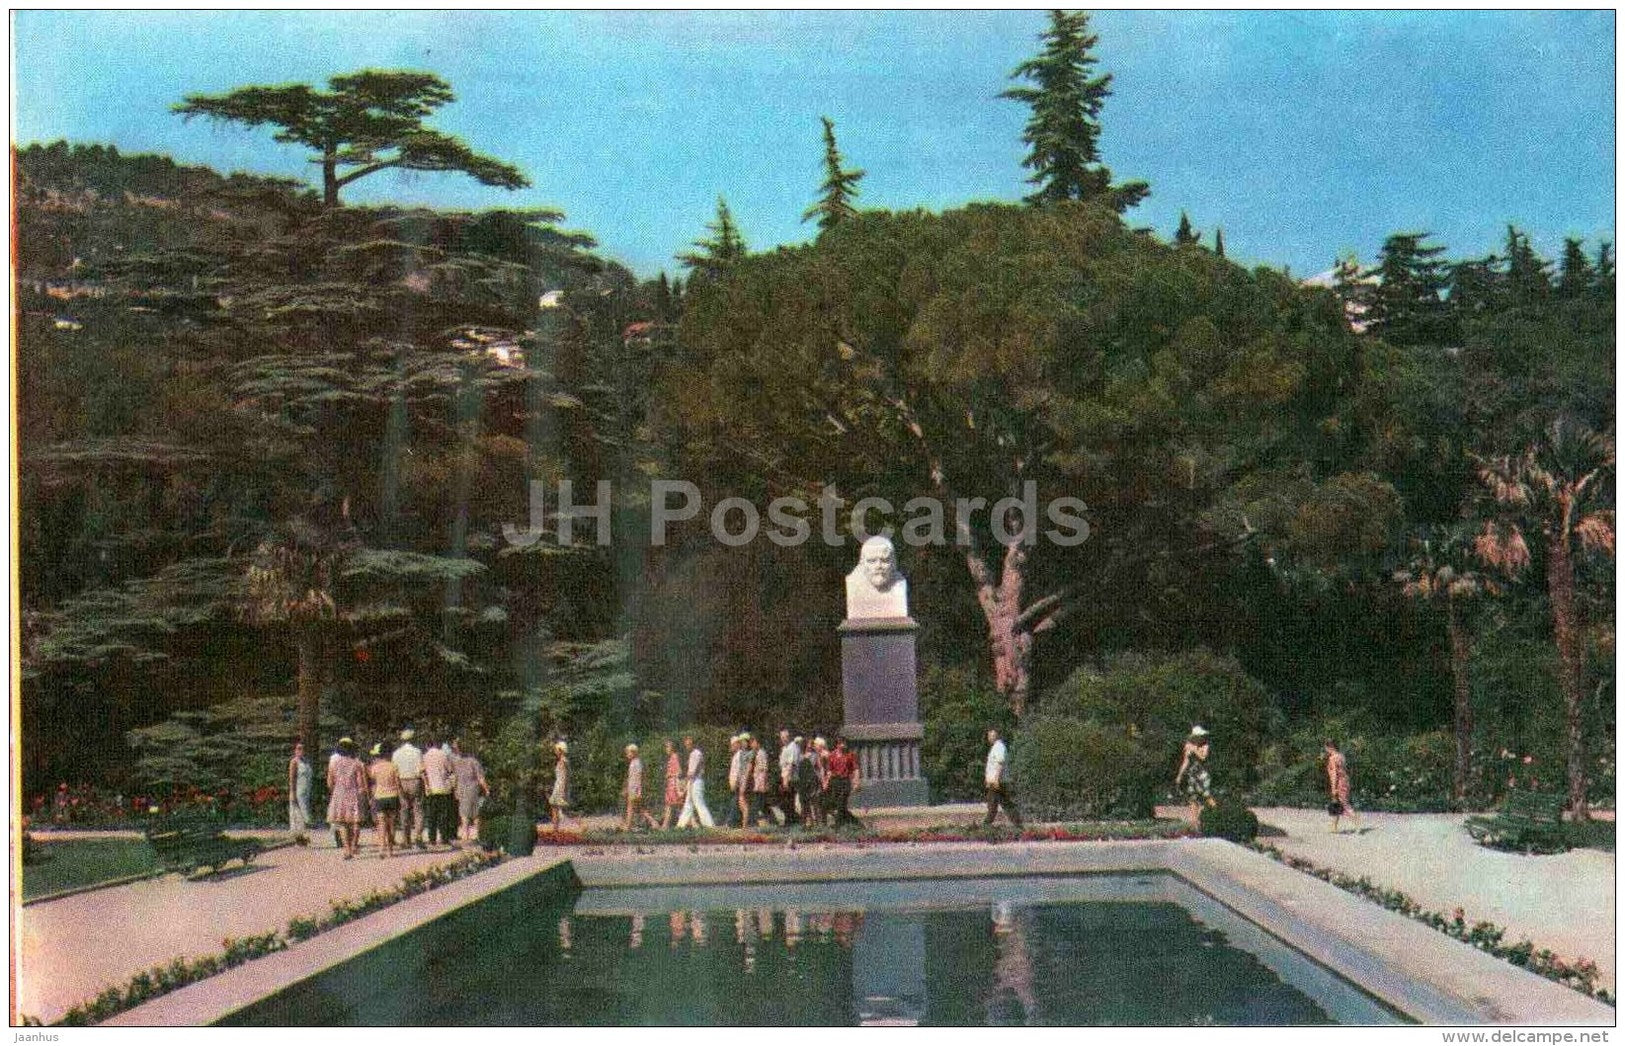 parterre - Lenin monument - Nikitsky Botanical Garden - Yalta - Crimea - 1972 - Ukraine USSR - unused - JH Postcards